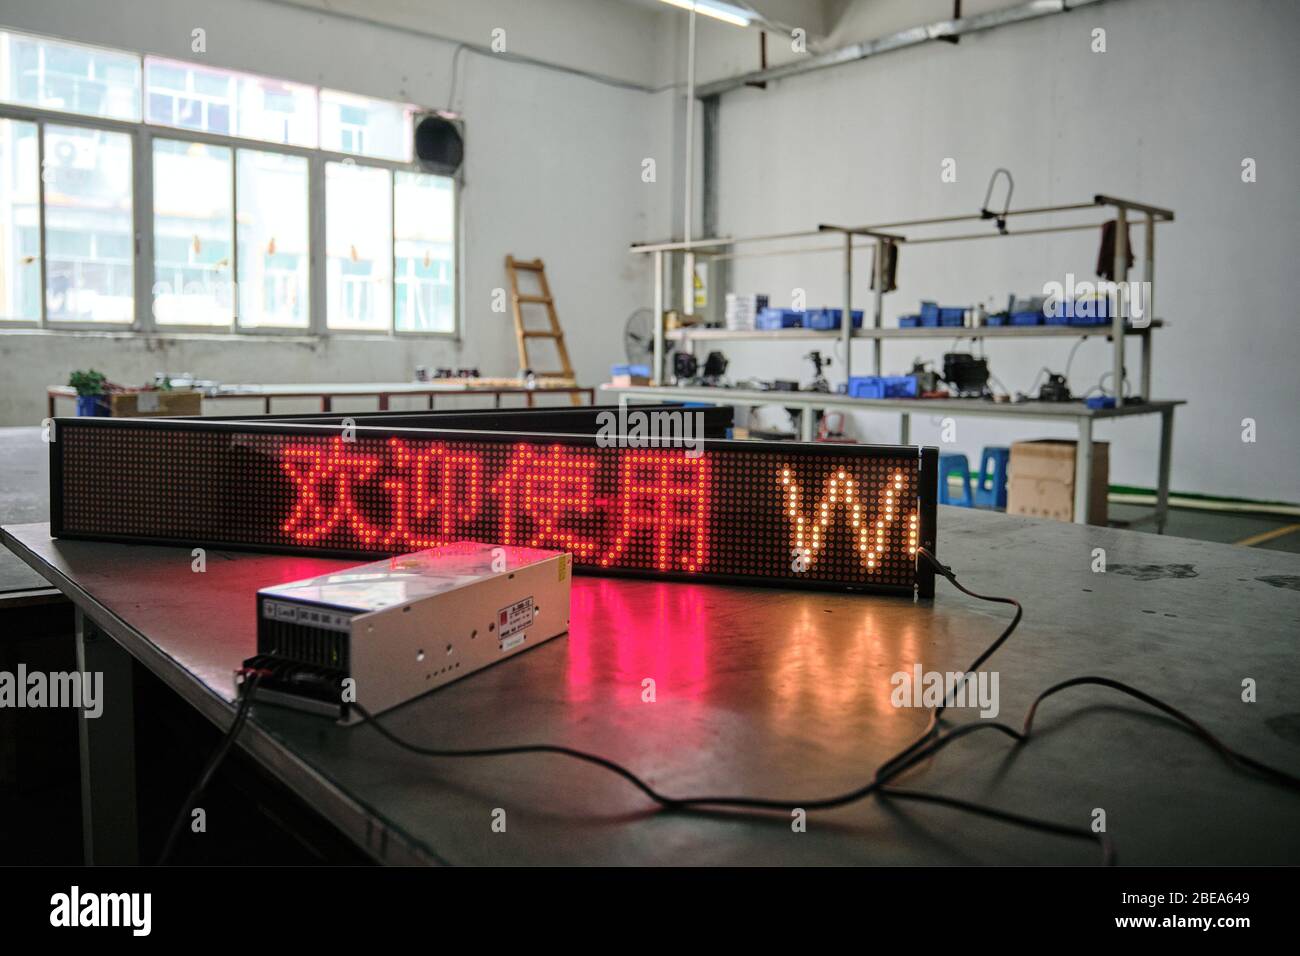 2 agosto 2019, Shenzhen, Cina: Un pannello illuminante di illuminazione a LED in uno stabilimento a LED a Shenzhen, Cina. Un'analisi ha dimostrato che il mercato dell'illuminazione a LED cinese sta per attraversare il contrassegno di 29 miliardi di dollari entro la fine del 2025. I LED offrono numerosi vantaggi rispetto ai prodotti di illuminazione tradizionali, come una maggiore durata a magazzino, una maggiore efficienza, un ambiente intuitivo, controllabile, non emettono radiazioni e consumano meno energia. (Immagine di credito: © Yan Tang/SOPA immagini via ZUMA Wire) Foto Stock